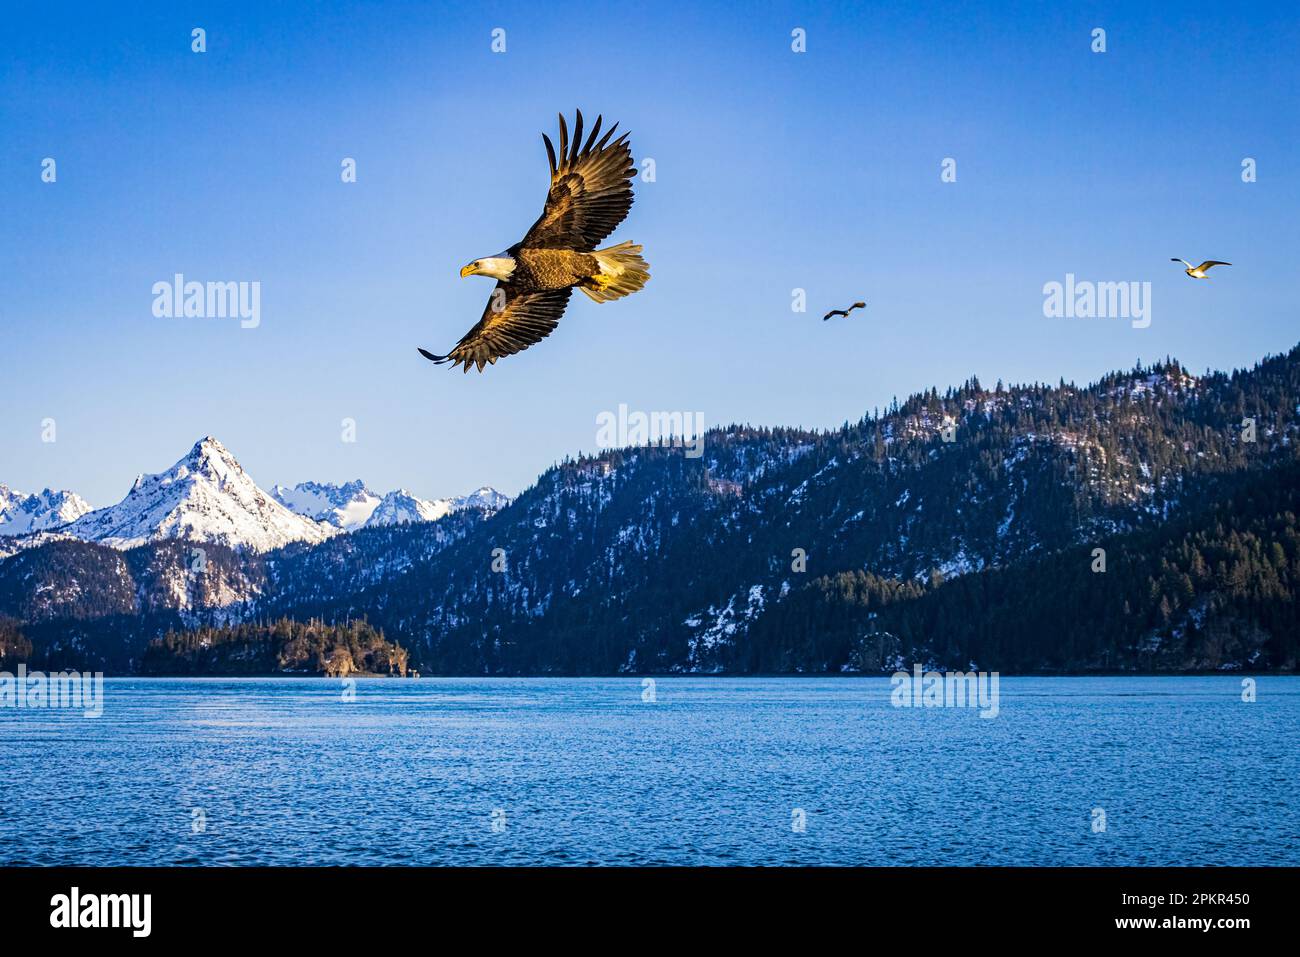 Aquila che vola con ali sparse sulla baia dell'oceano con neve ricoperta e montagne coperte di foresta sullo sfondo Foto Stock